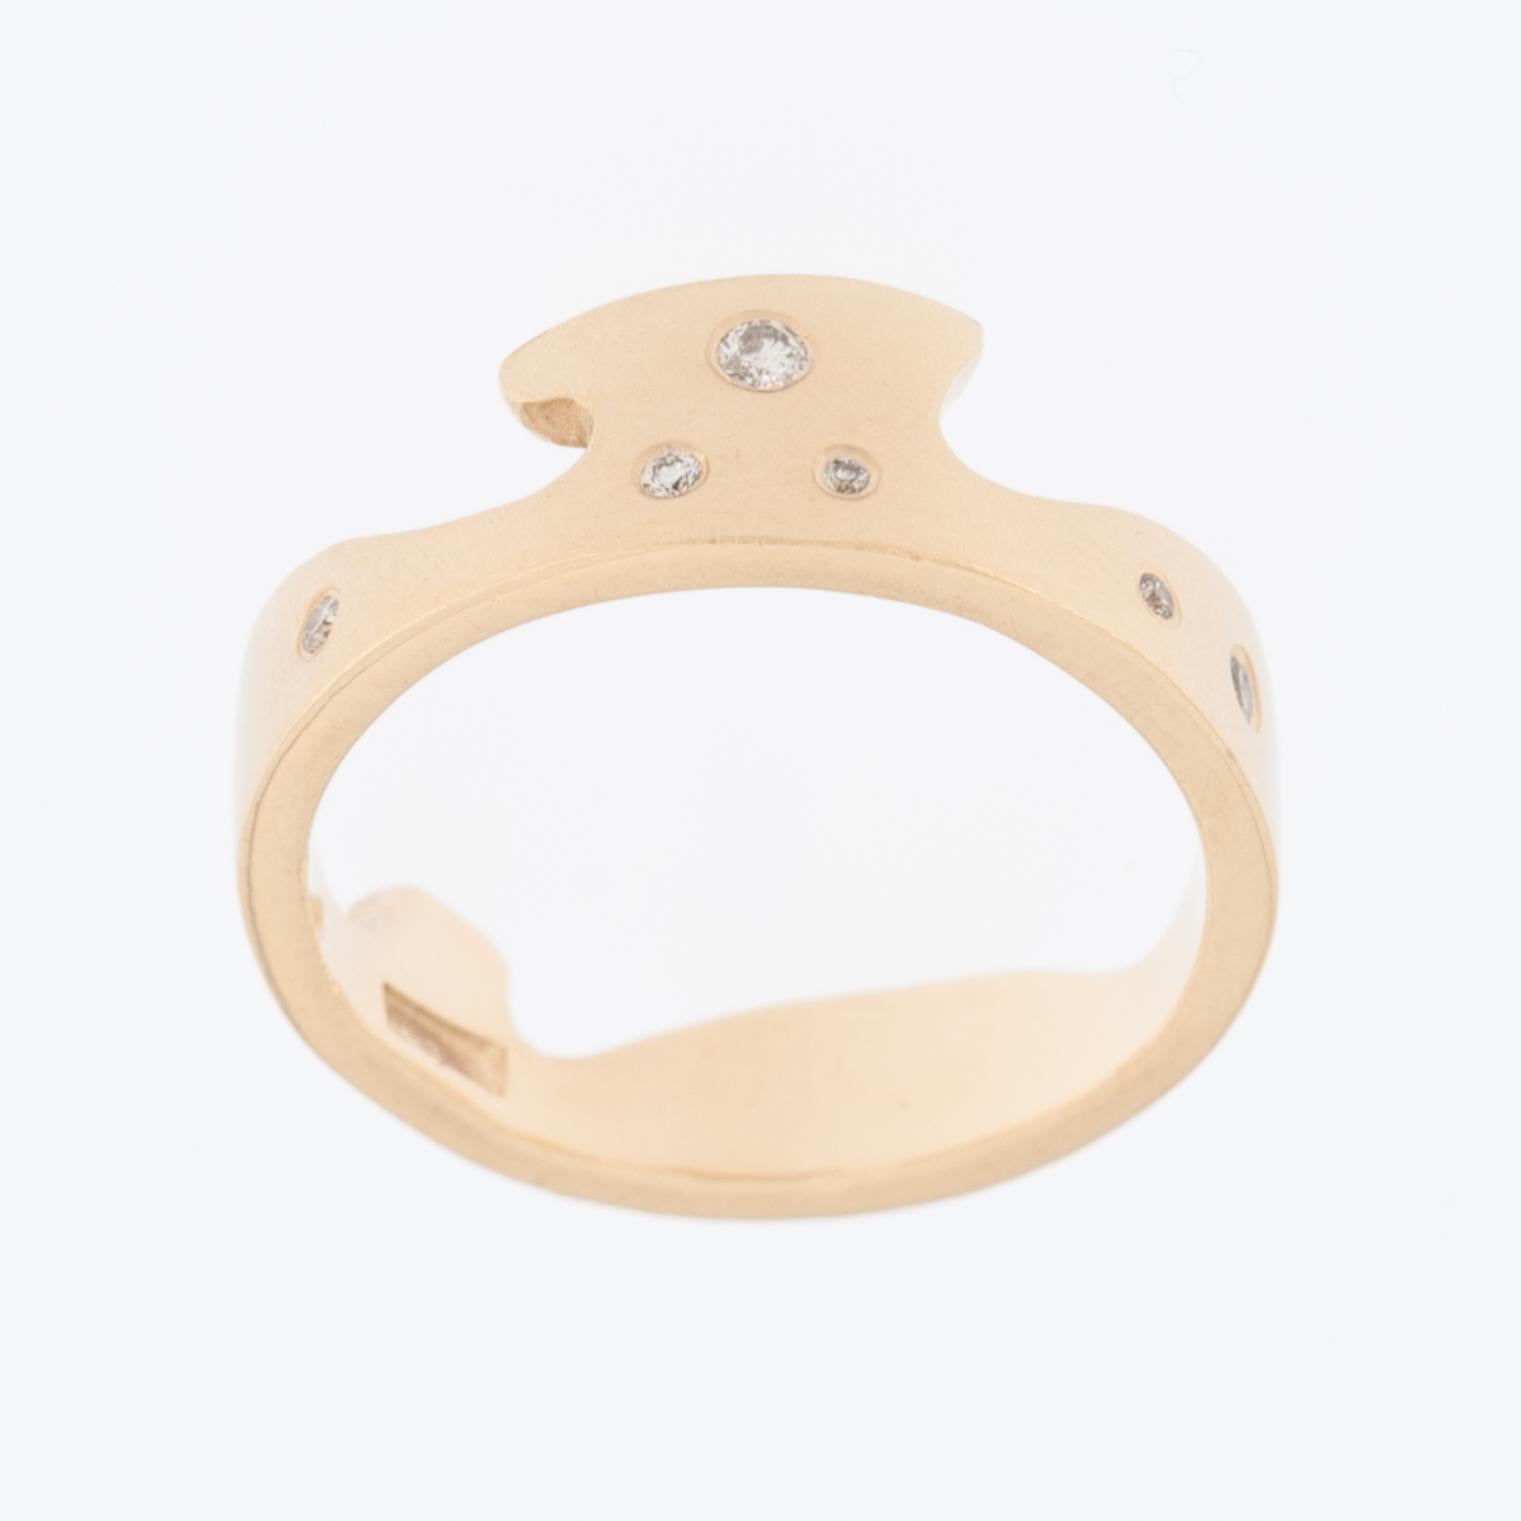 Der Crown Ring 18kt Gelbgold mit Diamanten ist ein luxuriöses und exquisites Schmuckstück. 

Der Ring ist aus 18-karätigem Gelbgold gefertigt, das für seine satte und warme Farbe bekannt ist und daher eine beliebte Wahl für edlen Schmuck ist.

Das